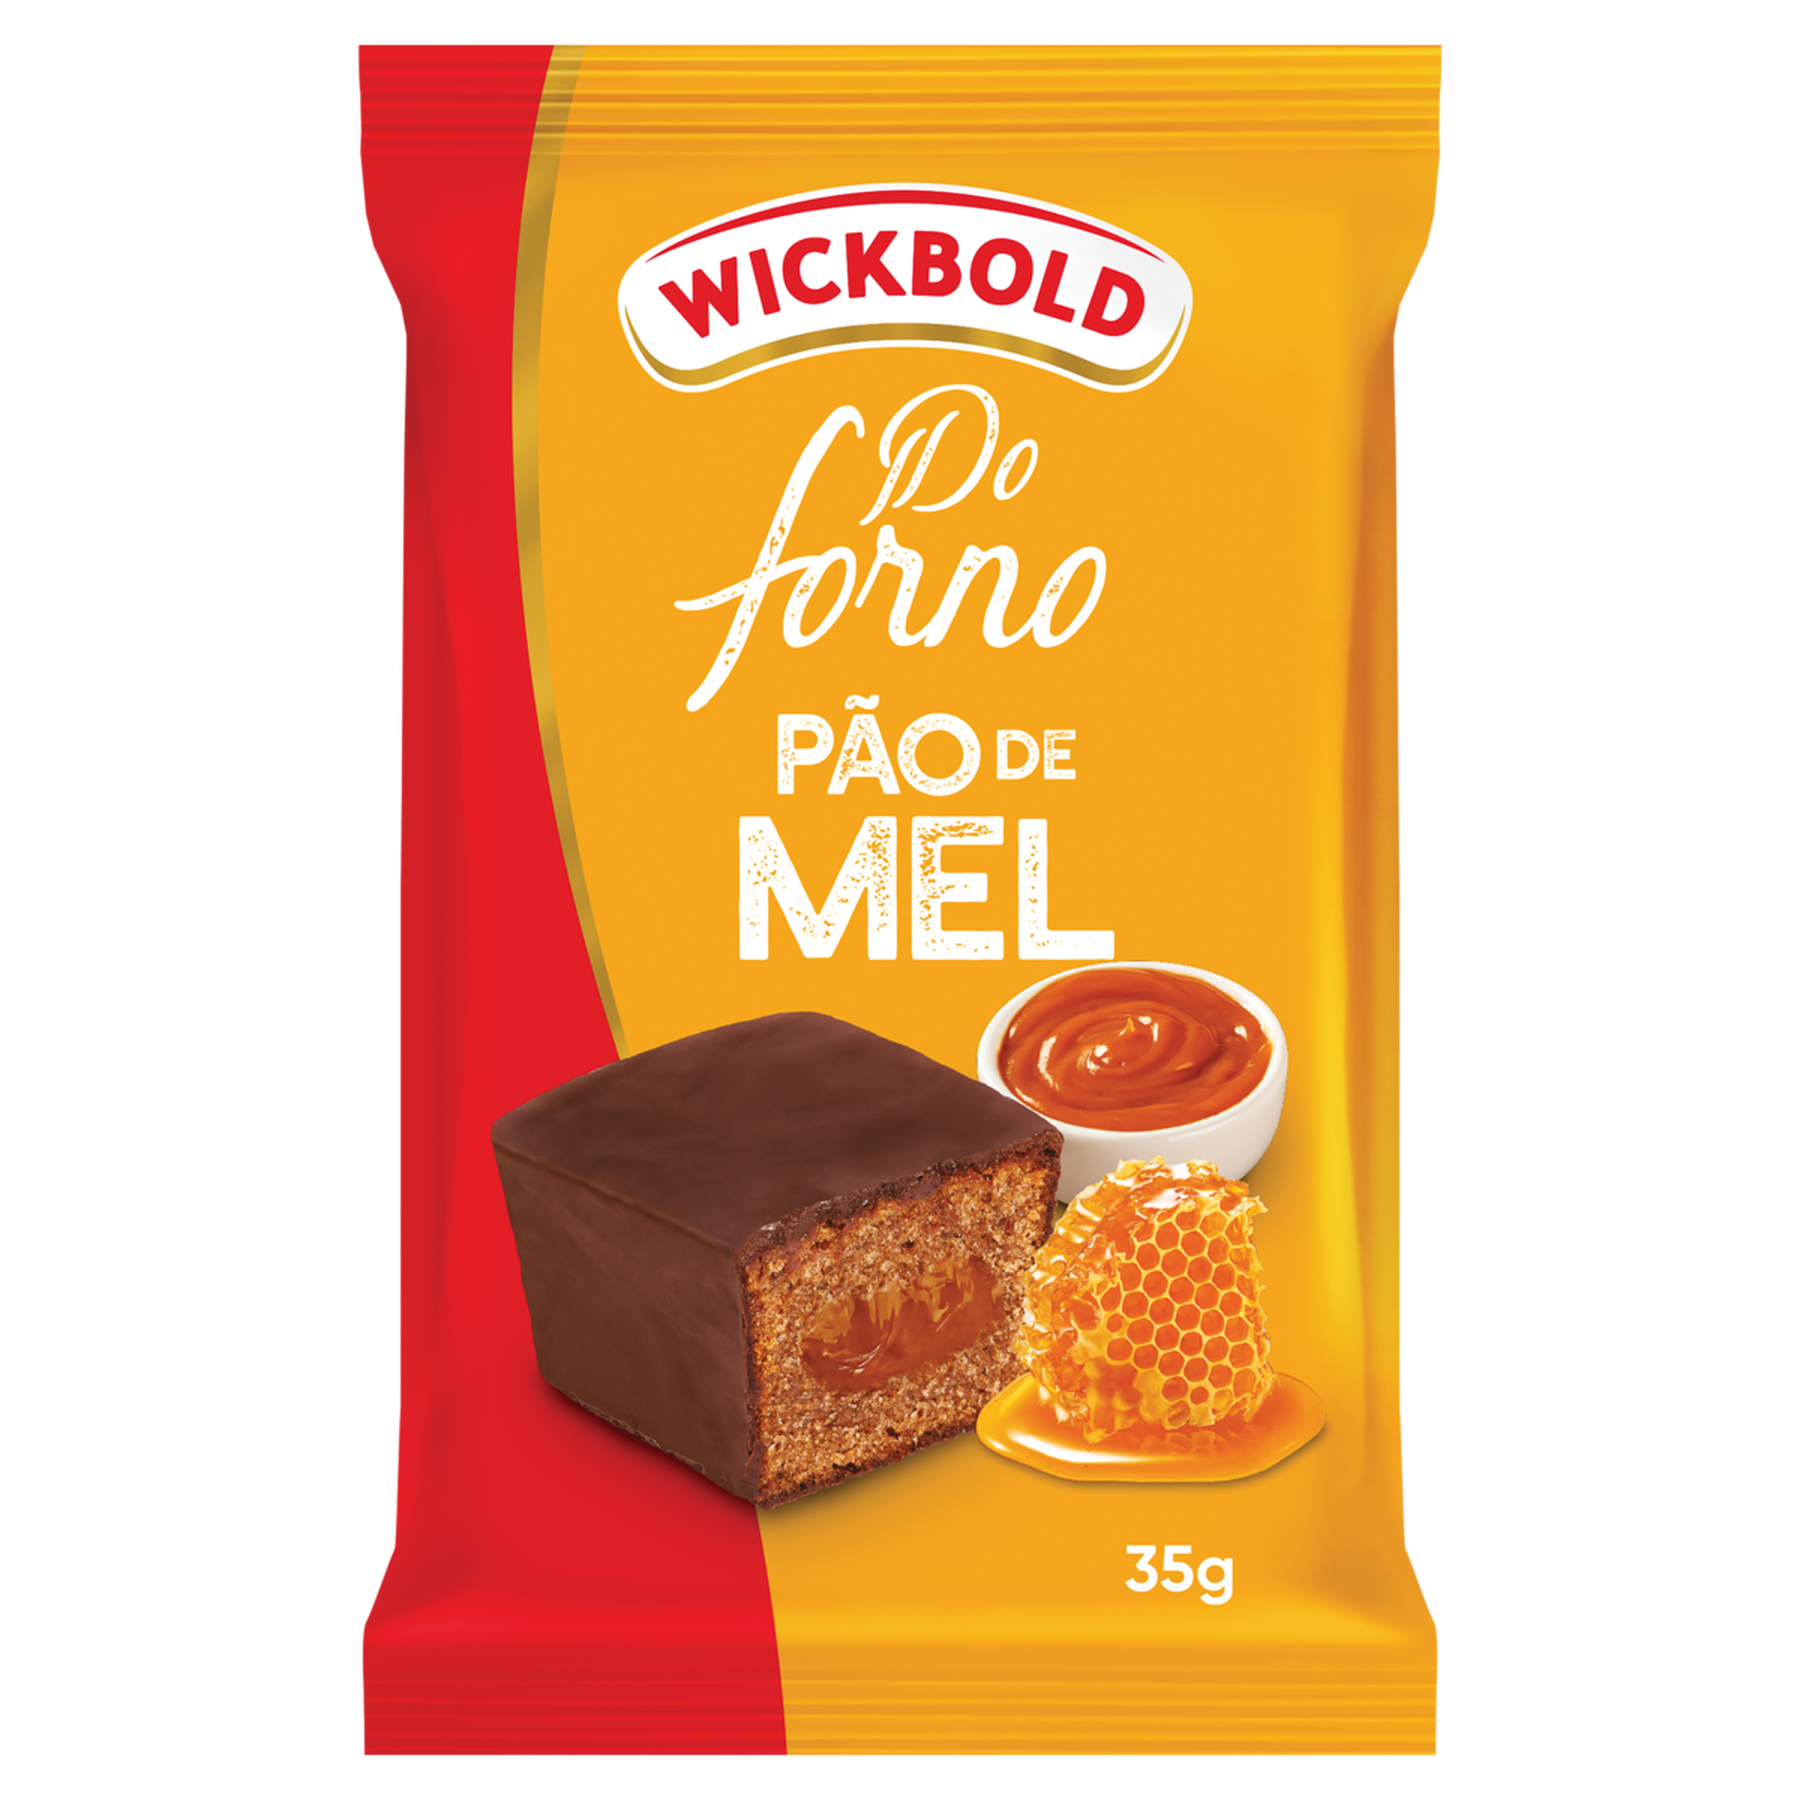 Pão de Mel Wickbold Do Forno Pacote 35g